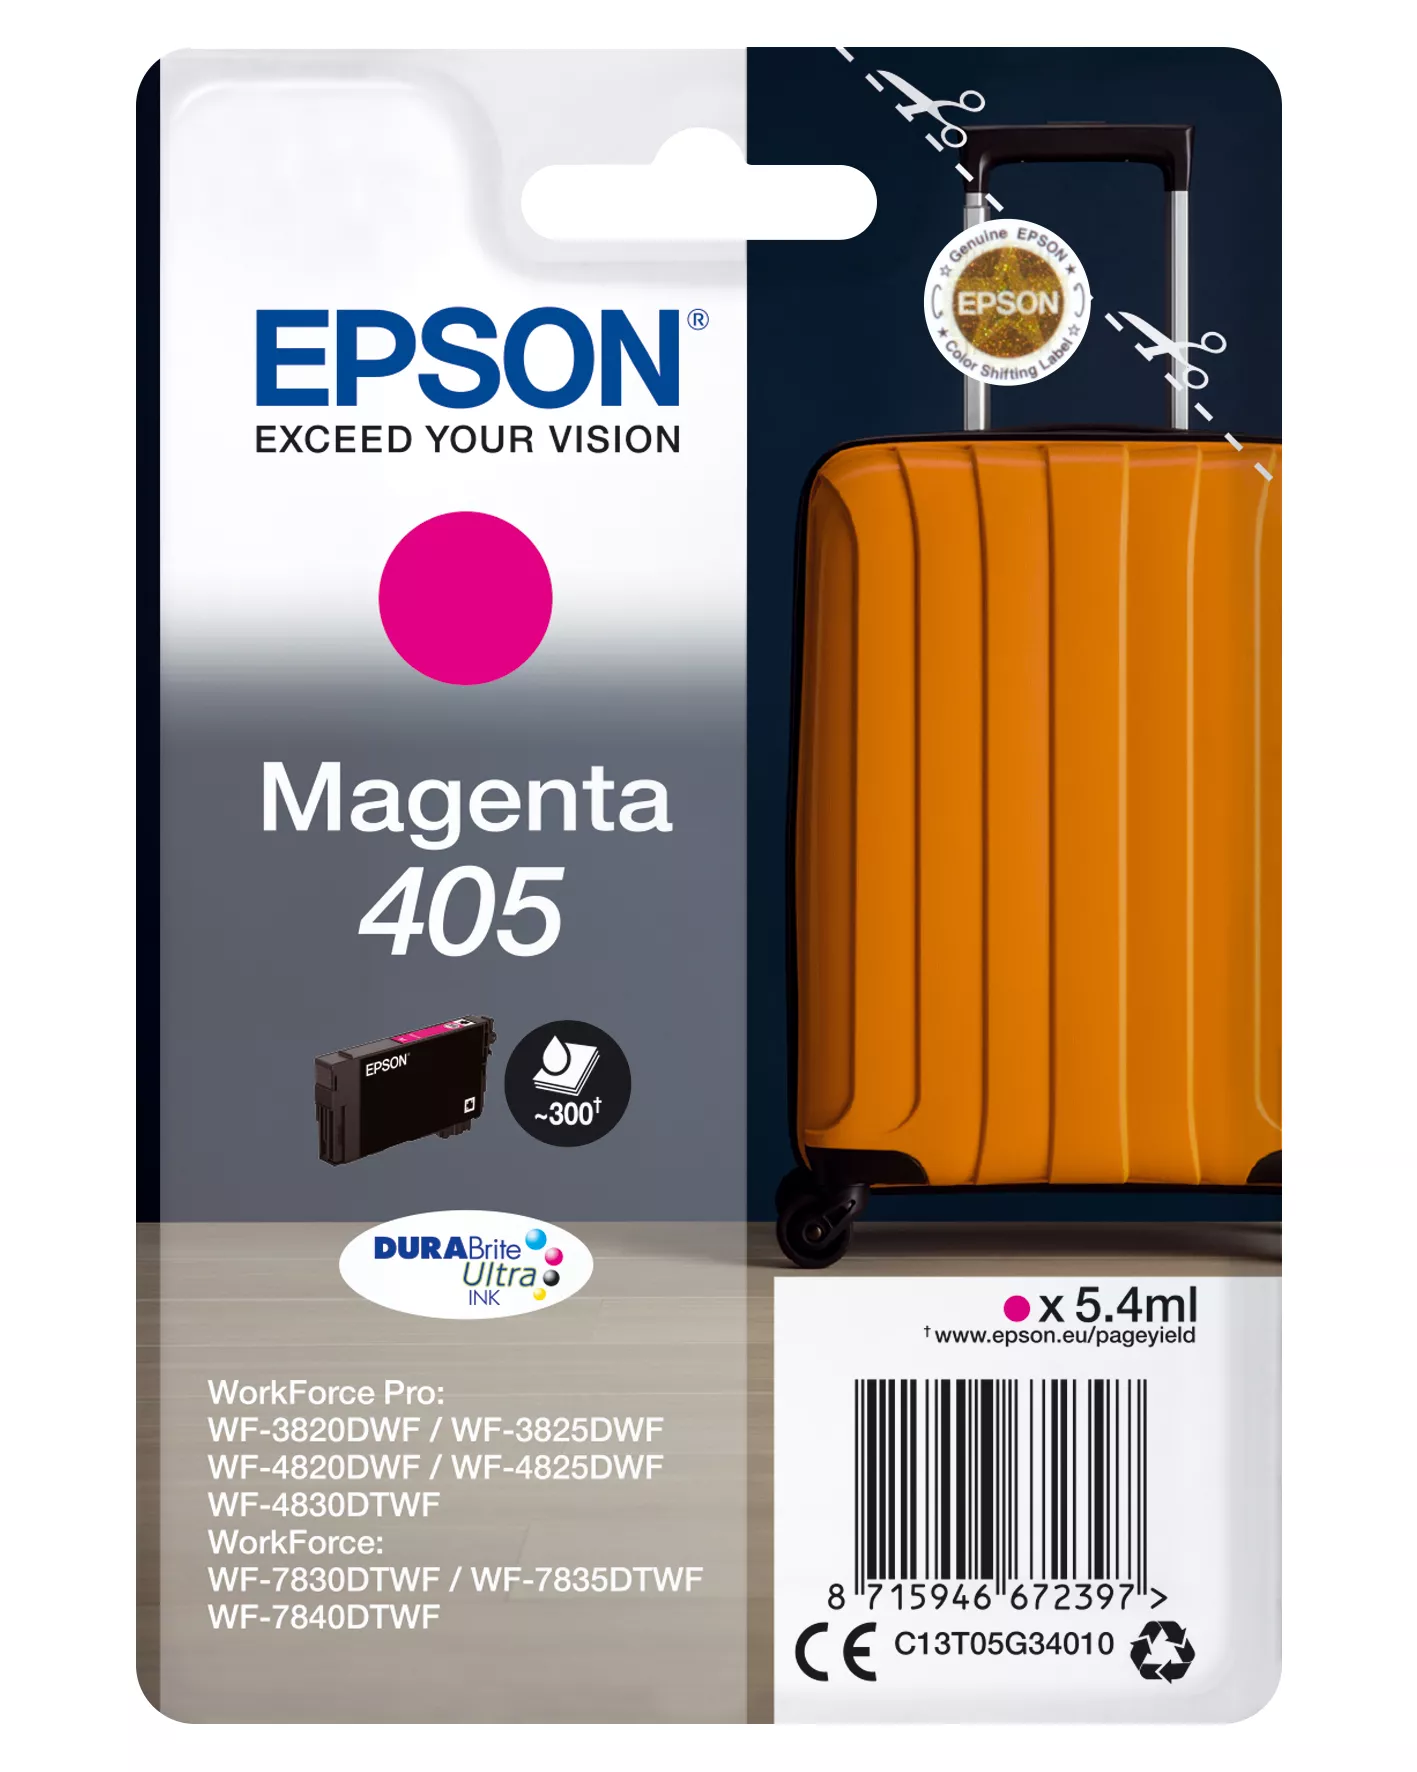 Achat EPSON Singlepack Magenta 405 DURABrite Ultra Ink - 8715946672397